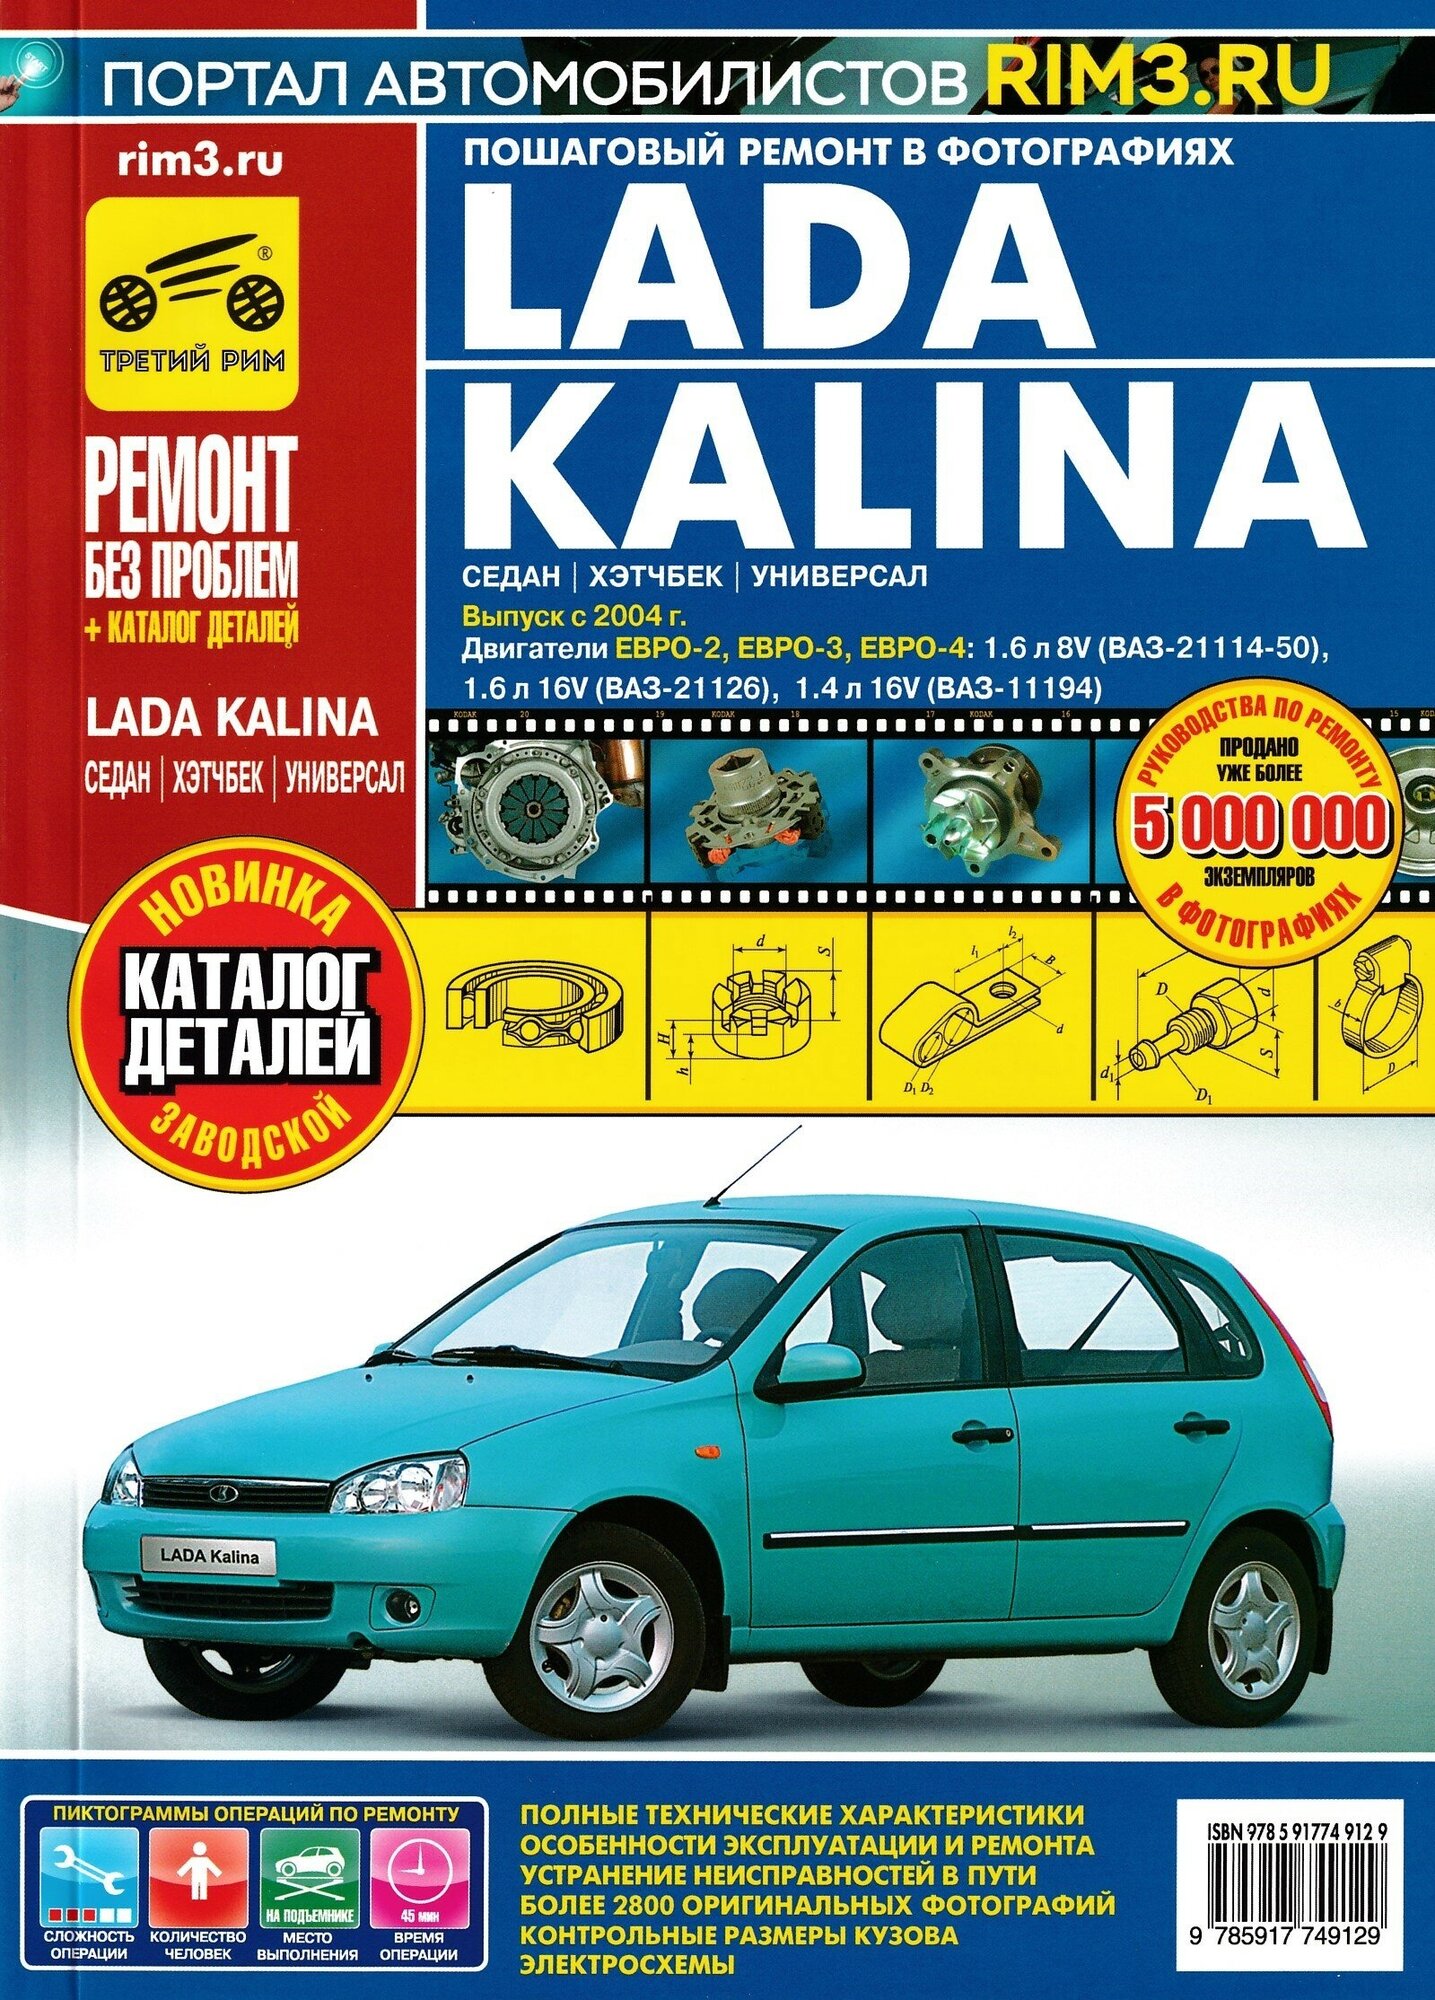 Lada Kalina (седан / хэтчбек / универсал). Выпуск с 2004 г. Руководство по эксплуатации, техническому обслуживанию и ремонту в цветных фотографиях